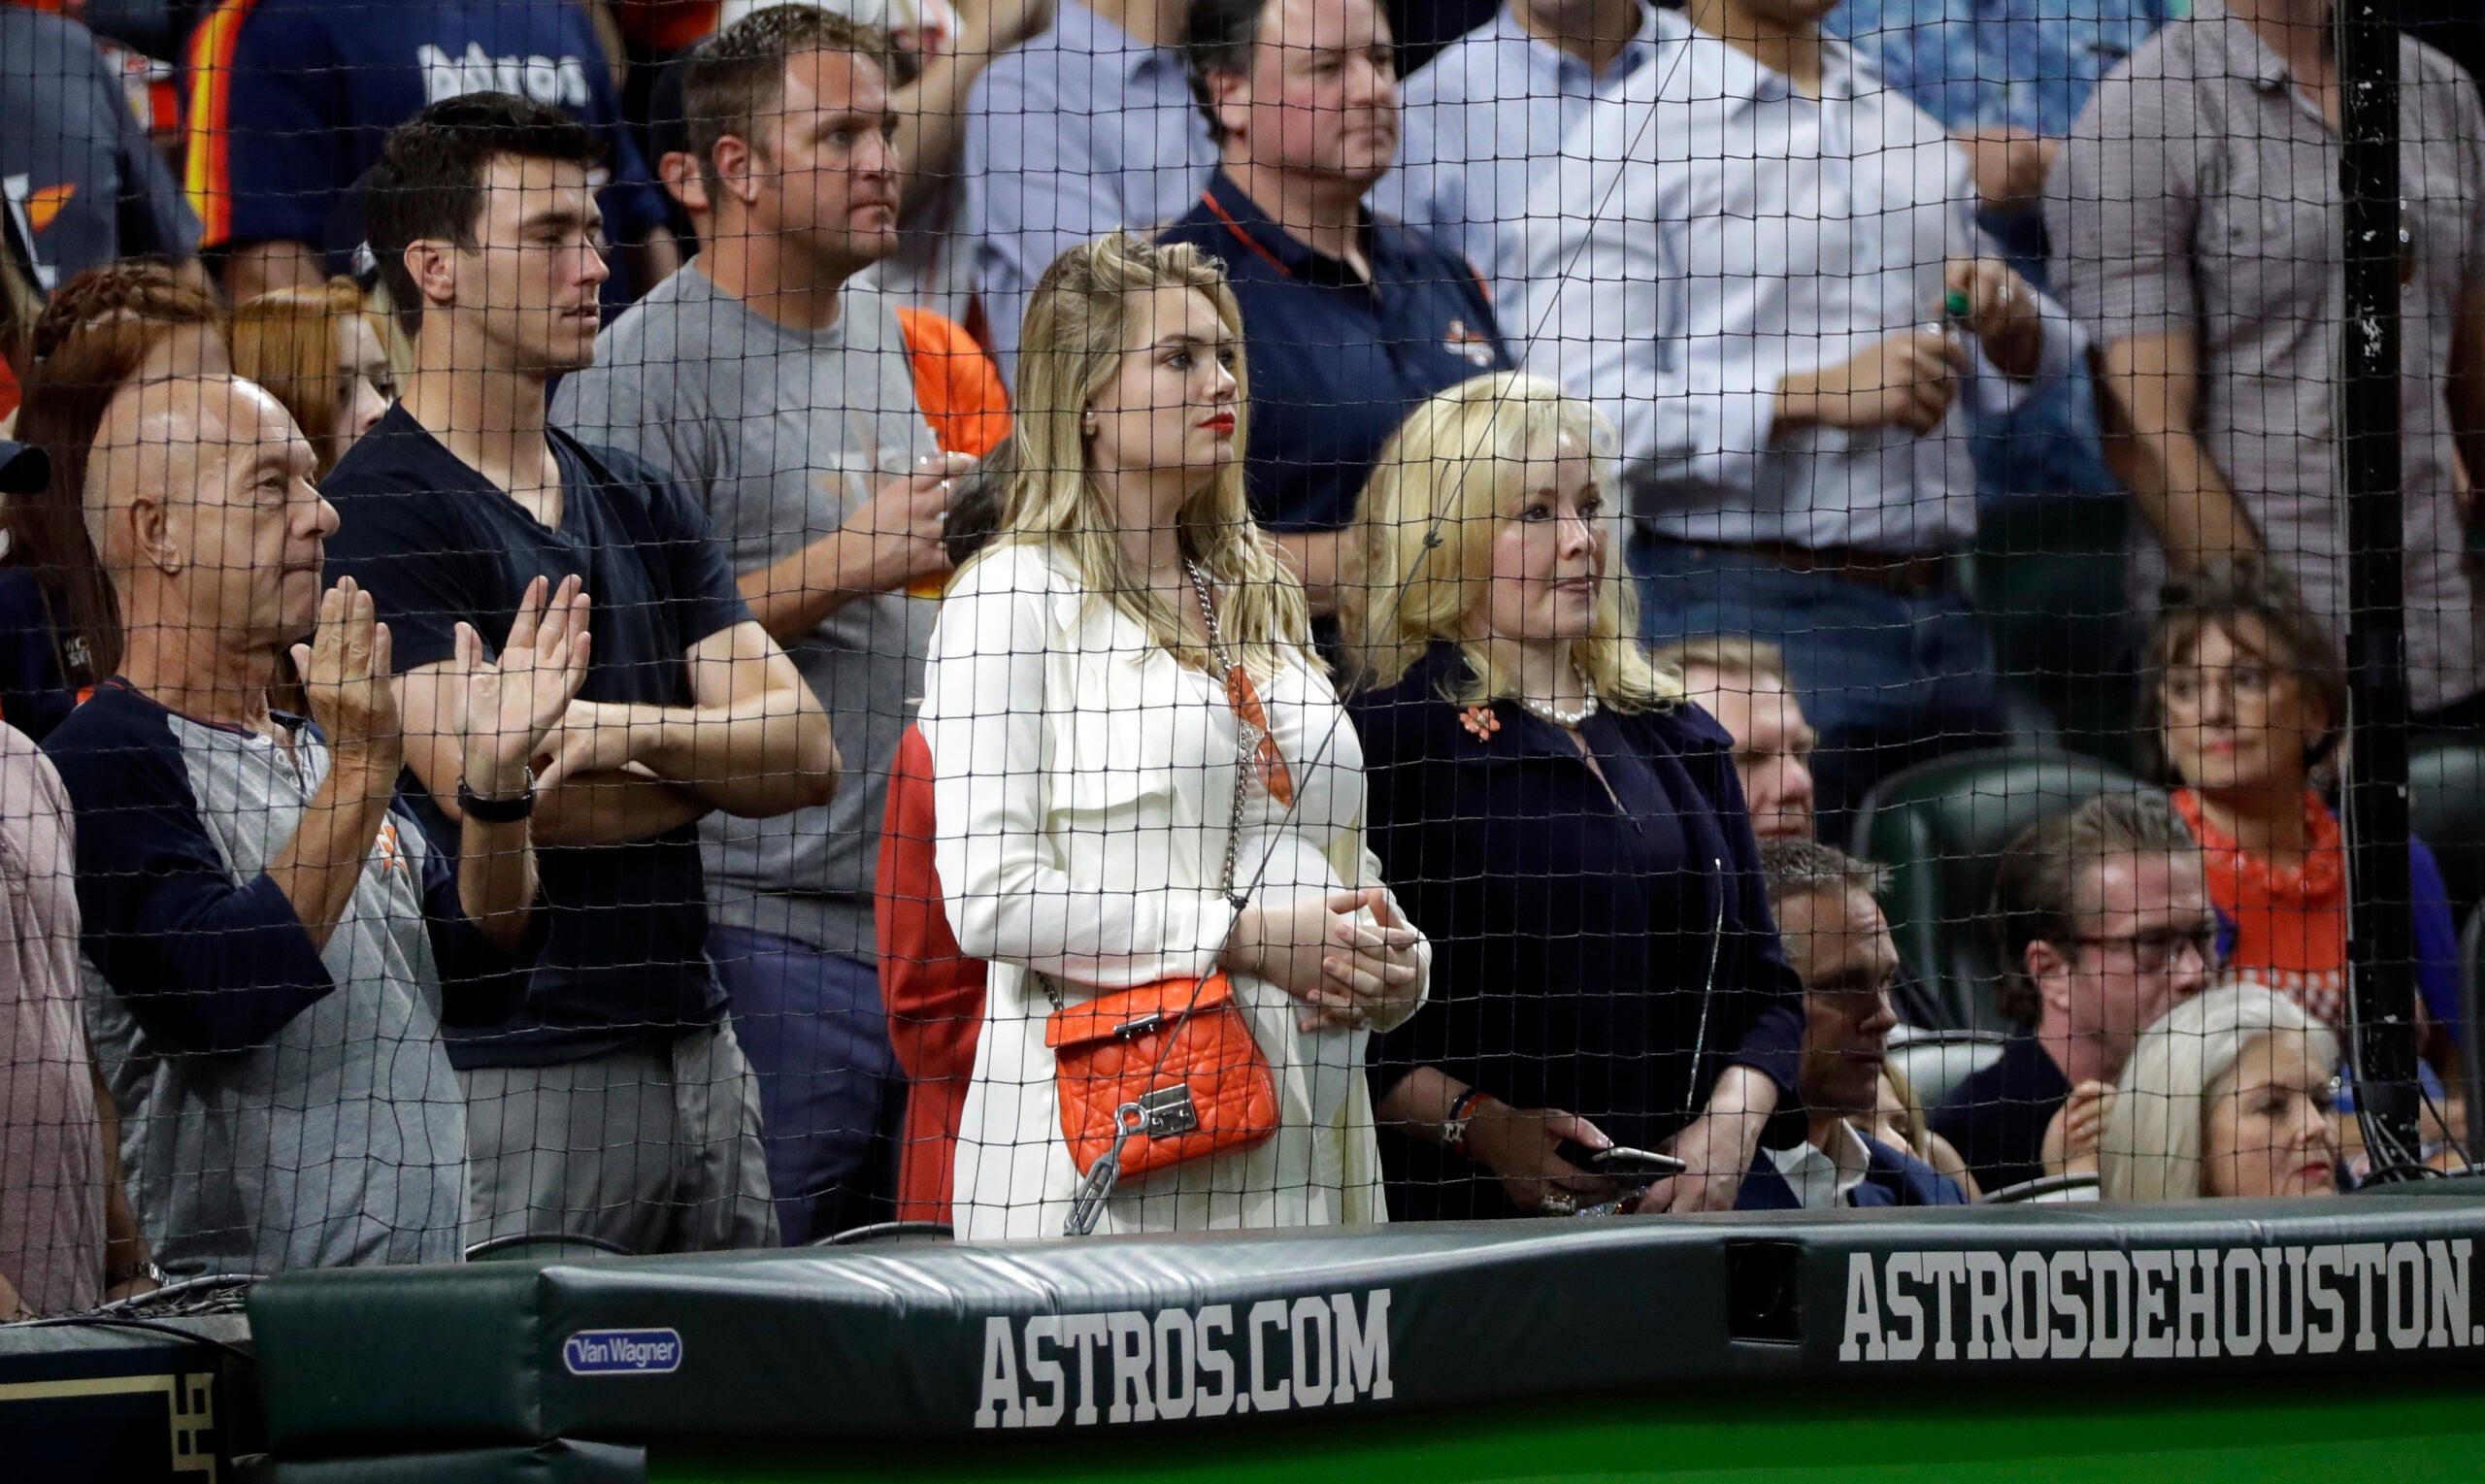 Kate Upton, Husband Justin Verlander Bring Daughter to MLB Event